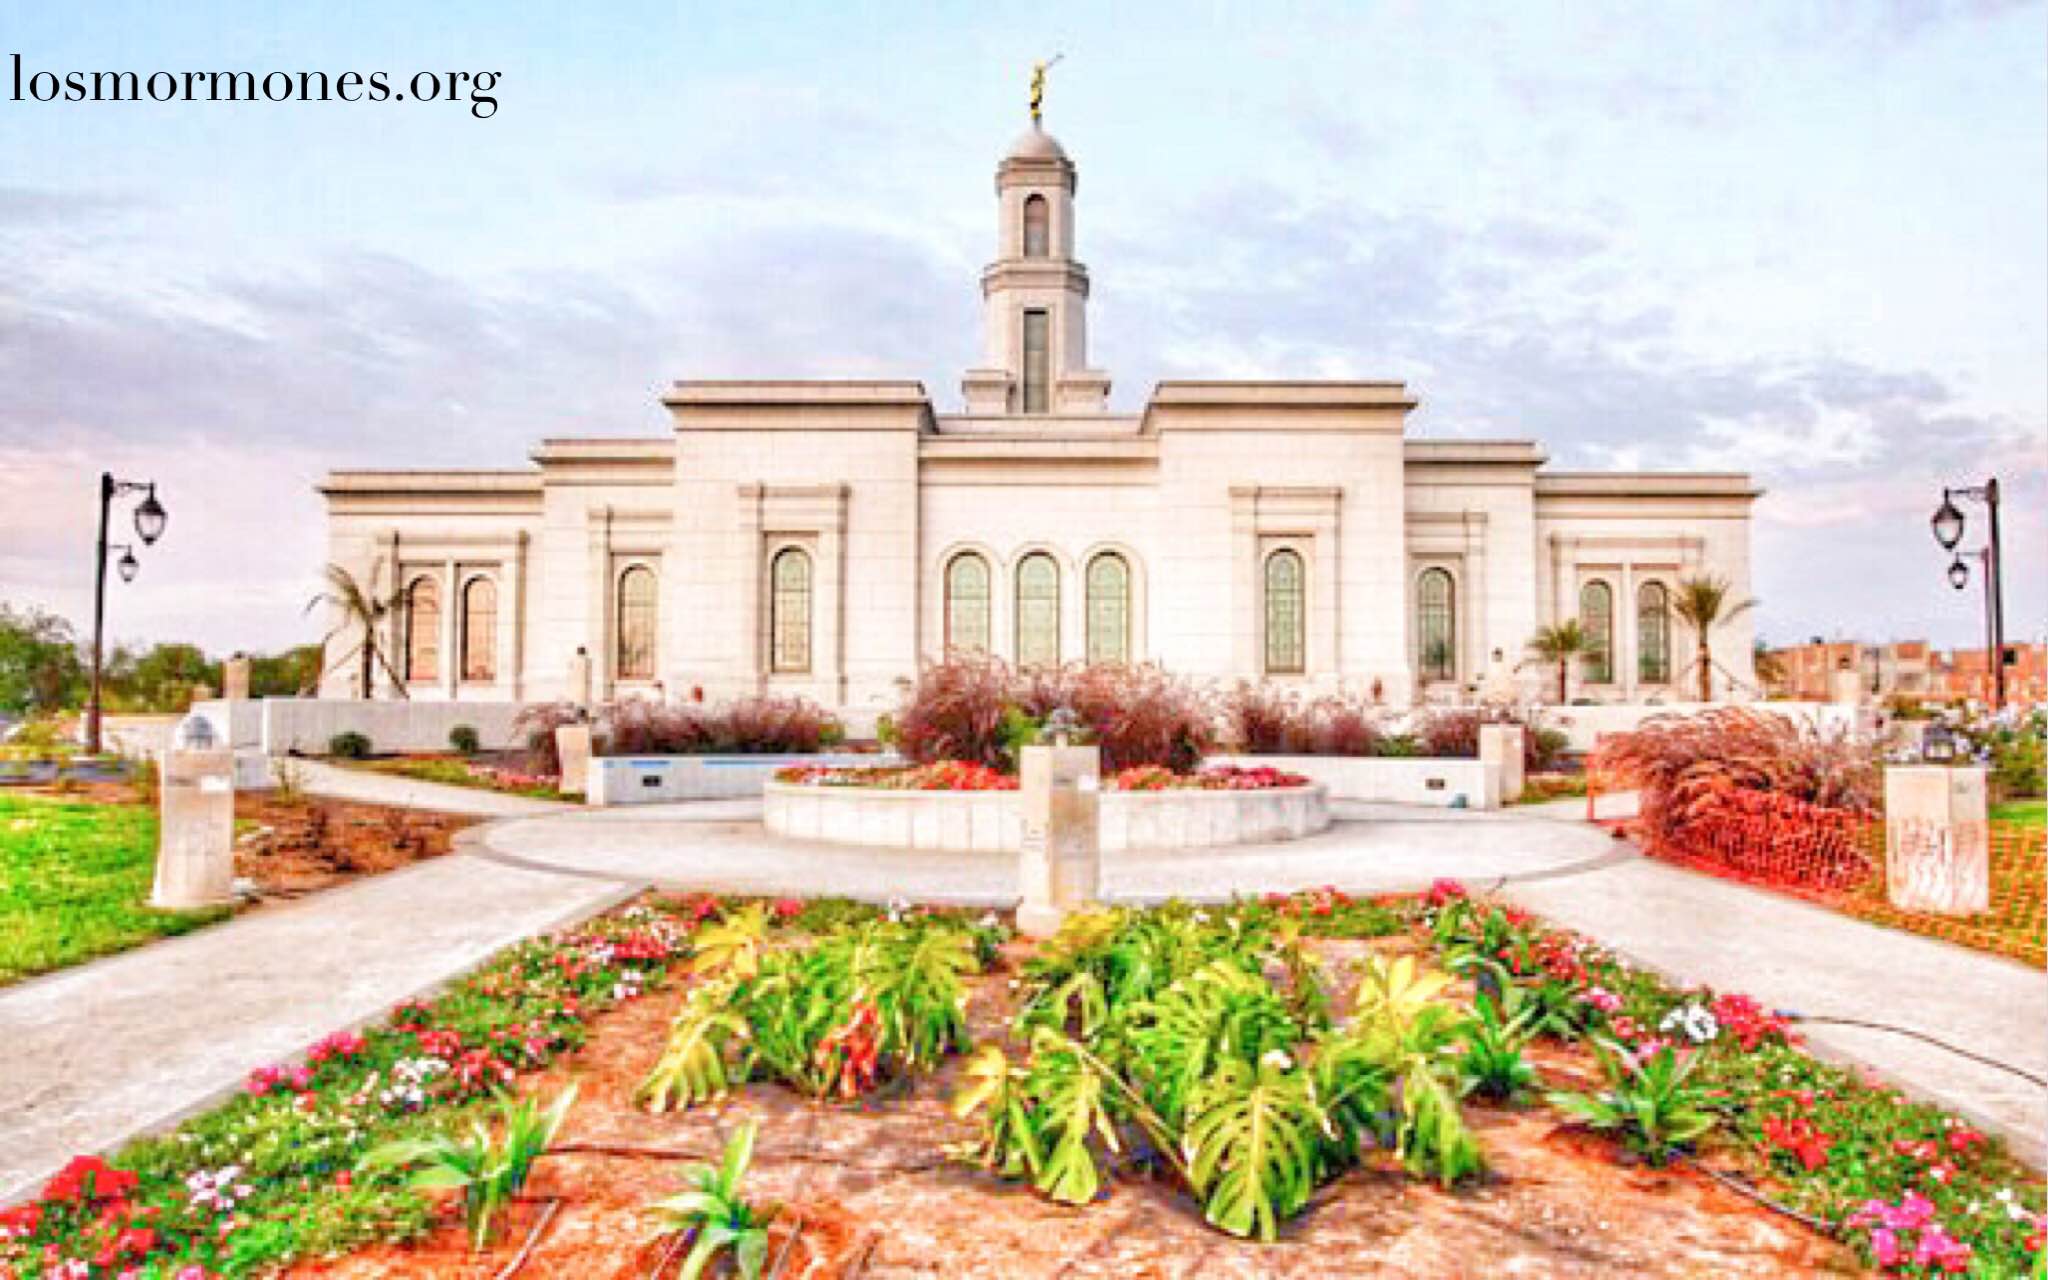 Mormones en Trujillo, Perú esperan ansiosamente el nuevo templo - Los  MormonesLos Mormones | La Iglesia de Jesucristo de los Santos de los  Últimos Días